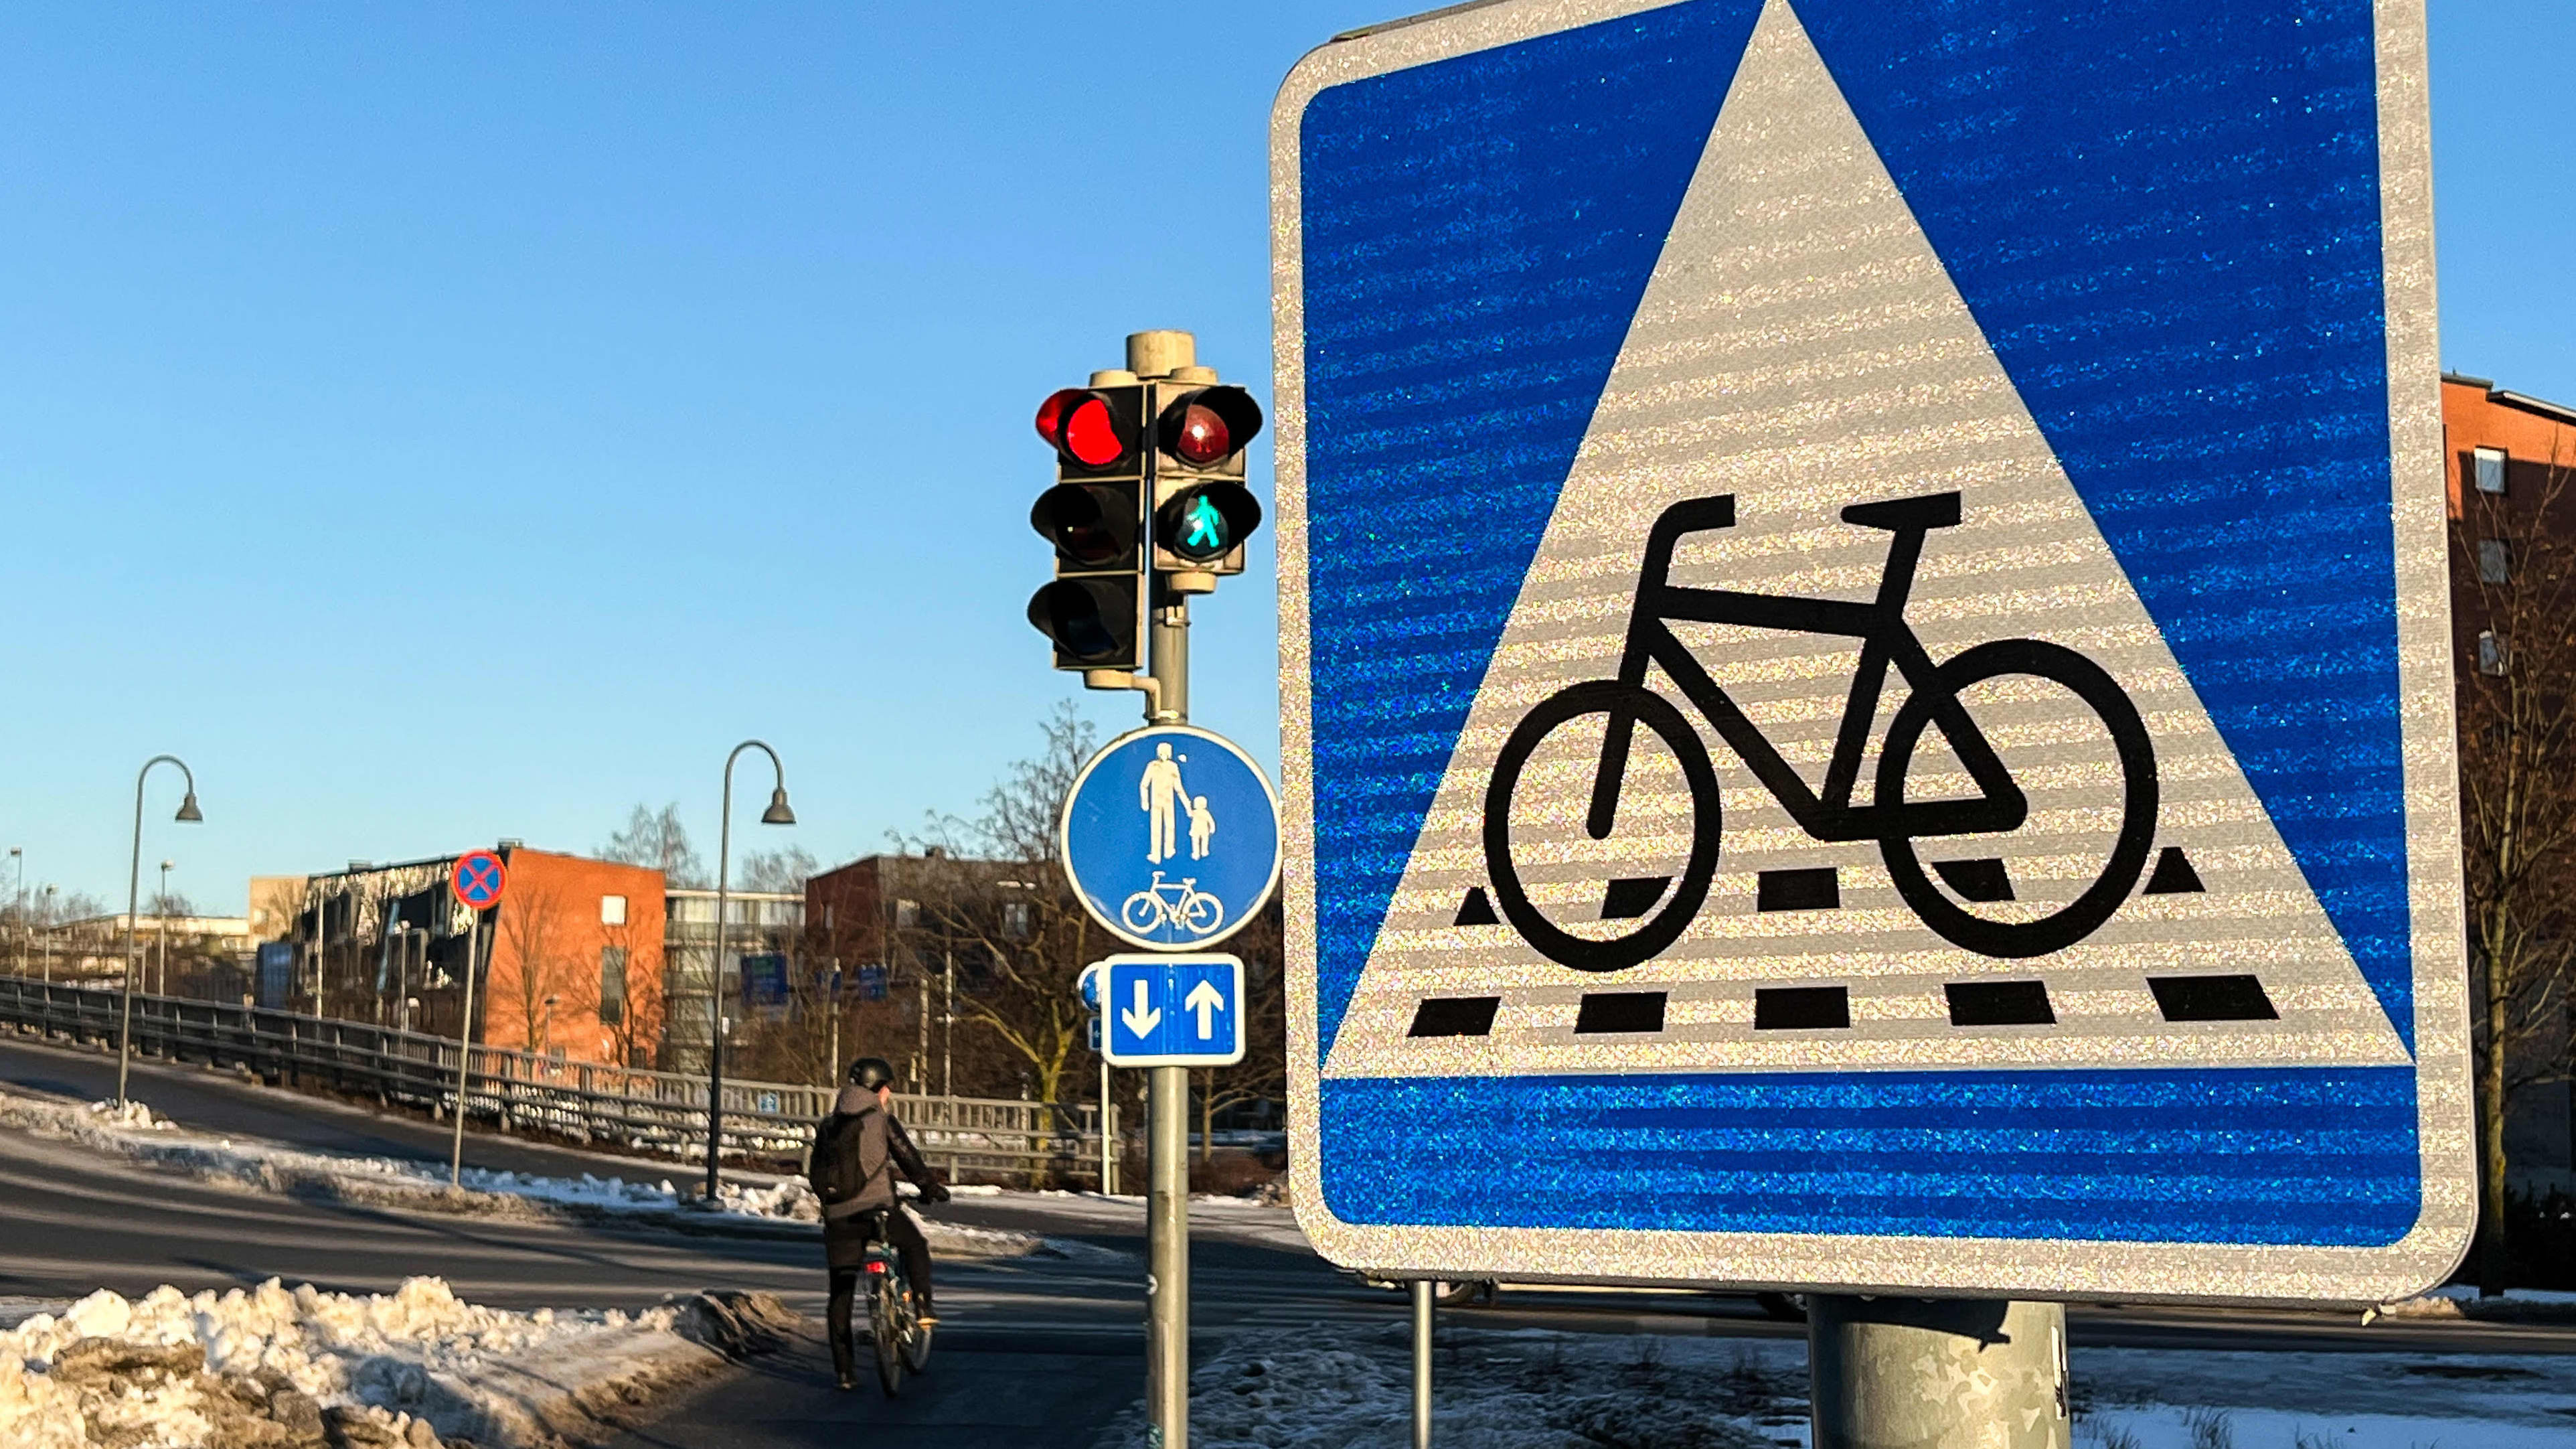 Polkupyöräilijä odottaa valojen vaihtumista Turun Aninkaistensillan kupeessa. Liikennemerkki B7, väistämisvelvollisuus pyöräilijän tienylityspaikassa. Neliönmallisessa sinipohjaisessa merkissa on valkoisen kolmion sisällä polkupyörän kuva sekä katkoviivoitus osoittamassa pyörätien jatketta.